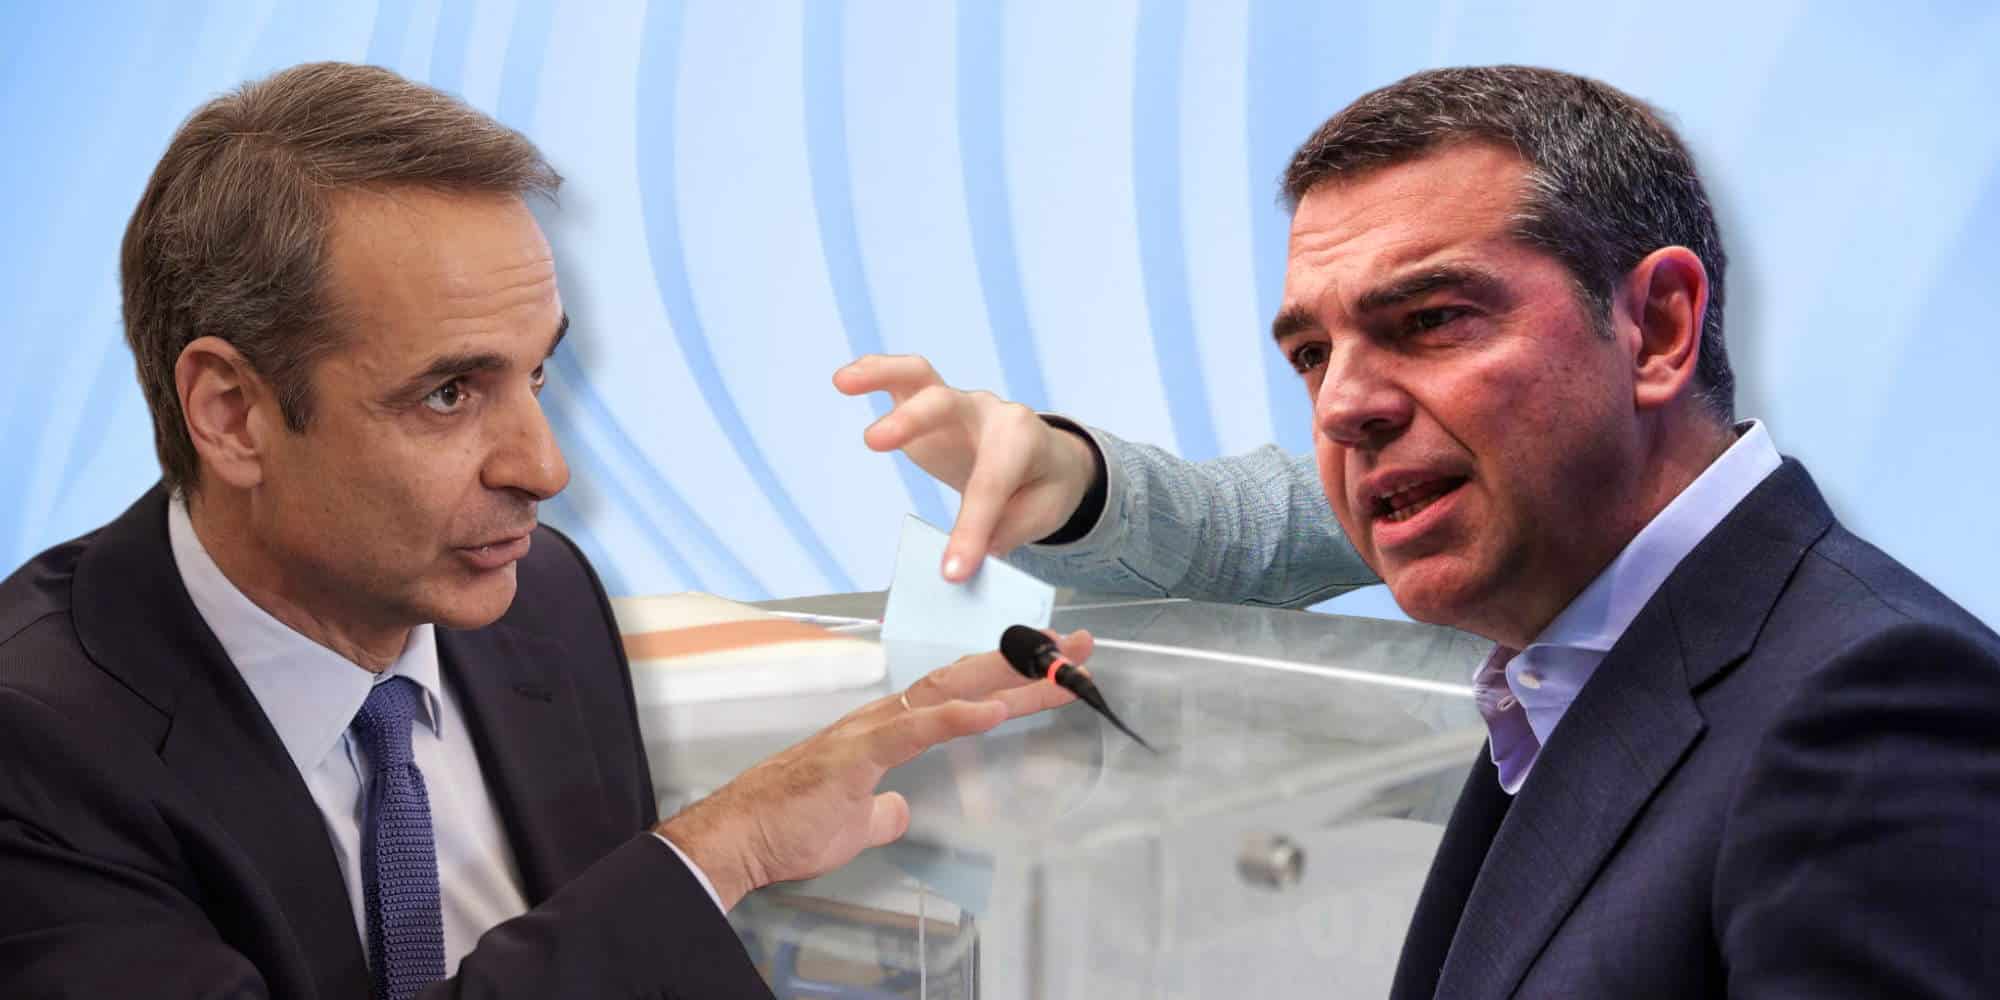 Κυριάκος Μητσοτάκης και Αλέξης Τσίπρας, σε μια ακόμη δημοσκόπηση πριν τις εκλογές